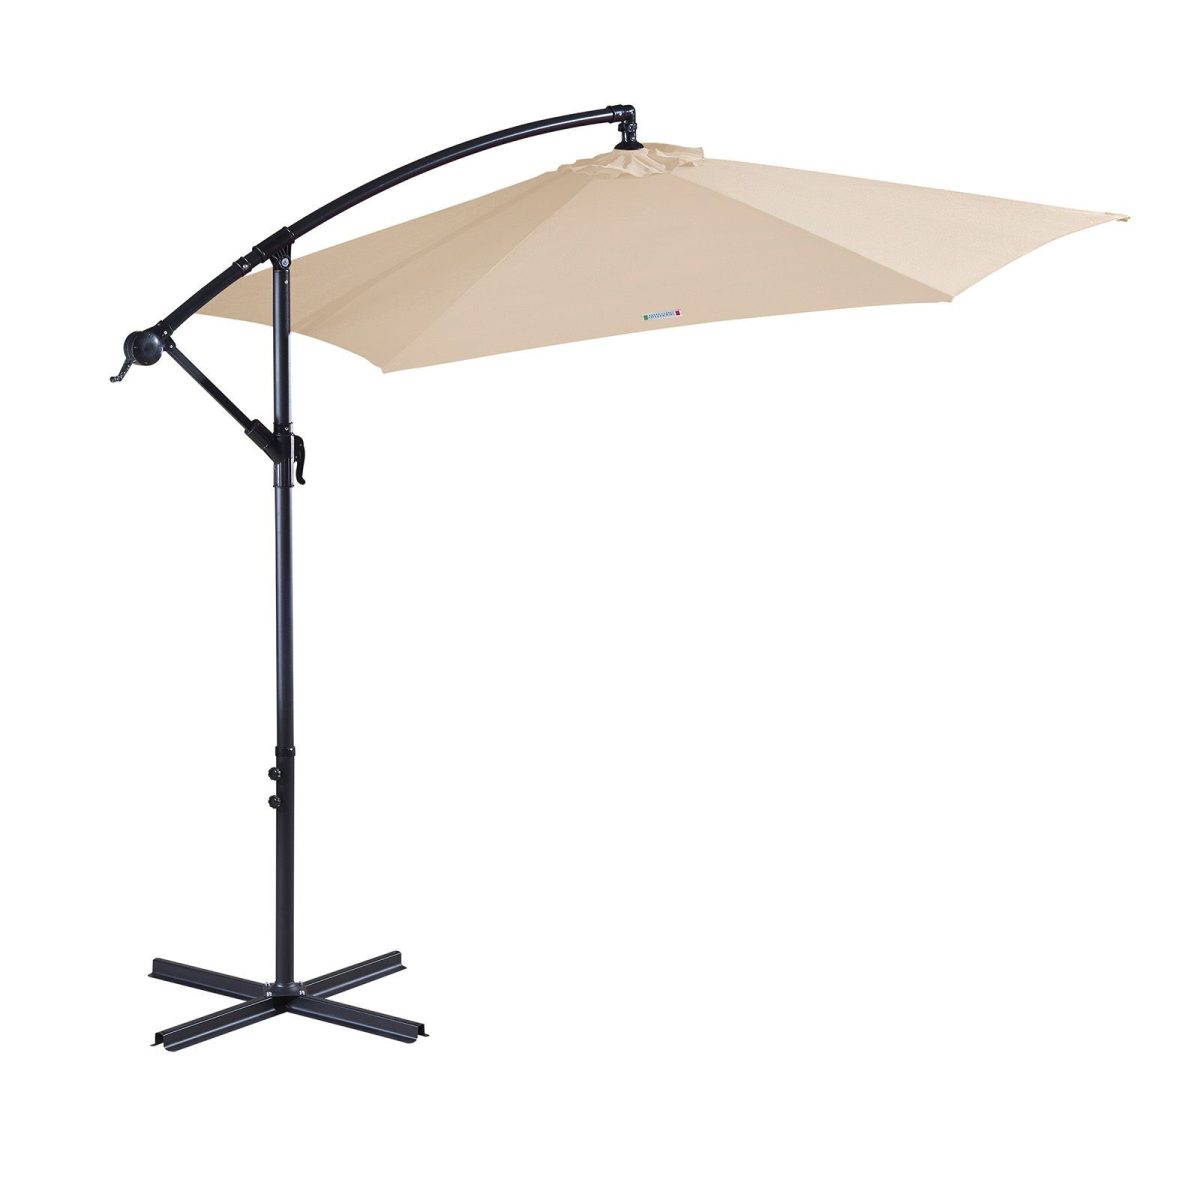 Milano 3M Outdoor Umbrella Cantilever With Protective Cover Patio Garden Shade – Beige